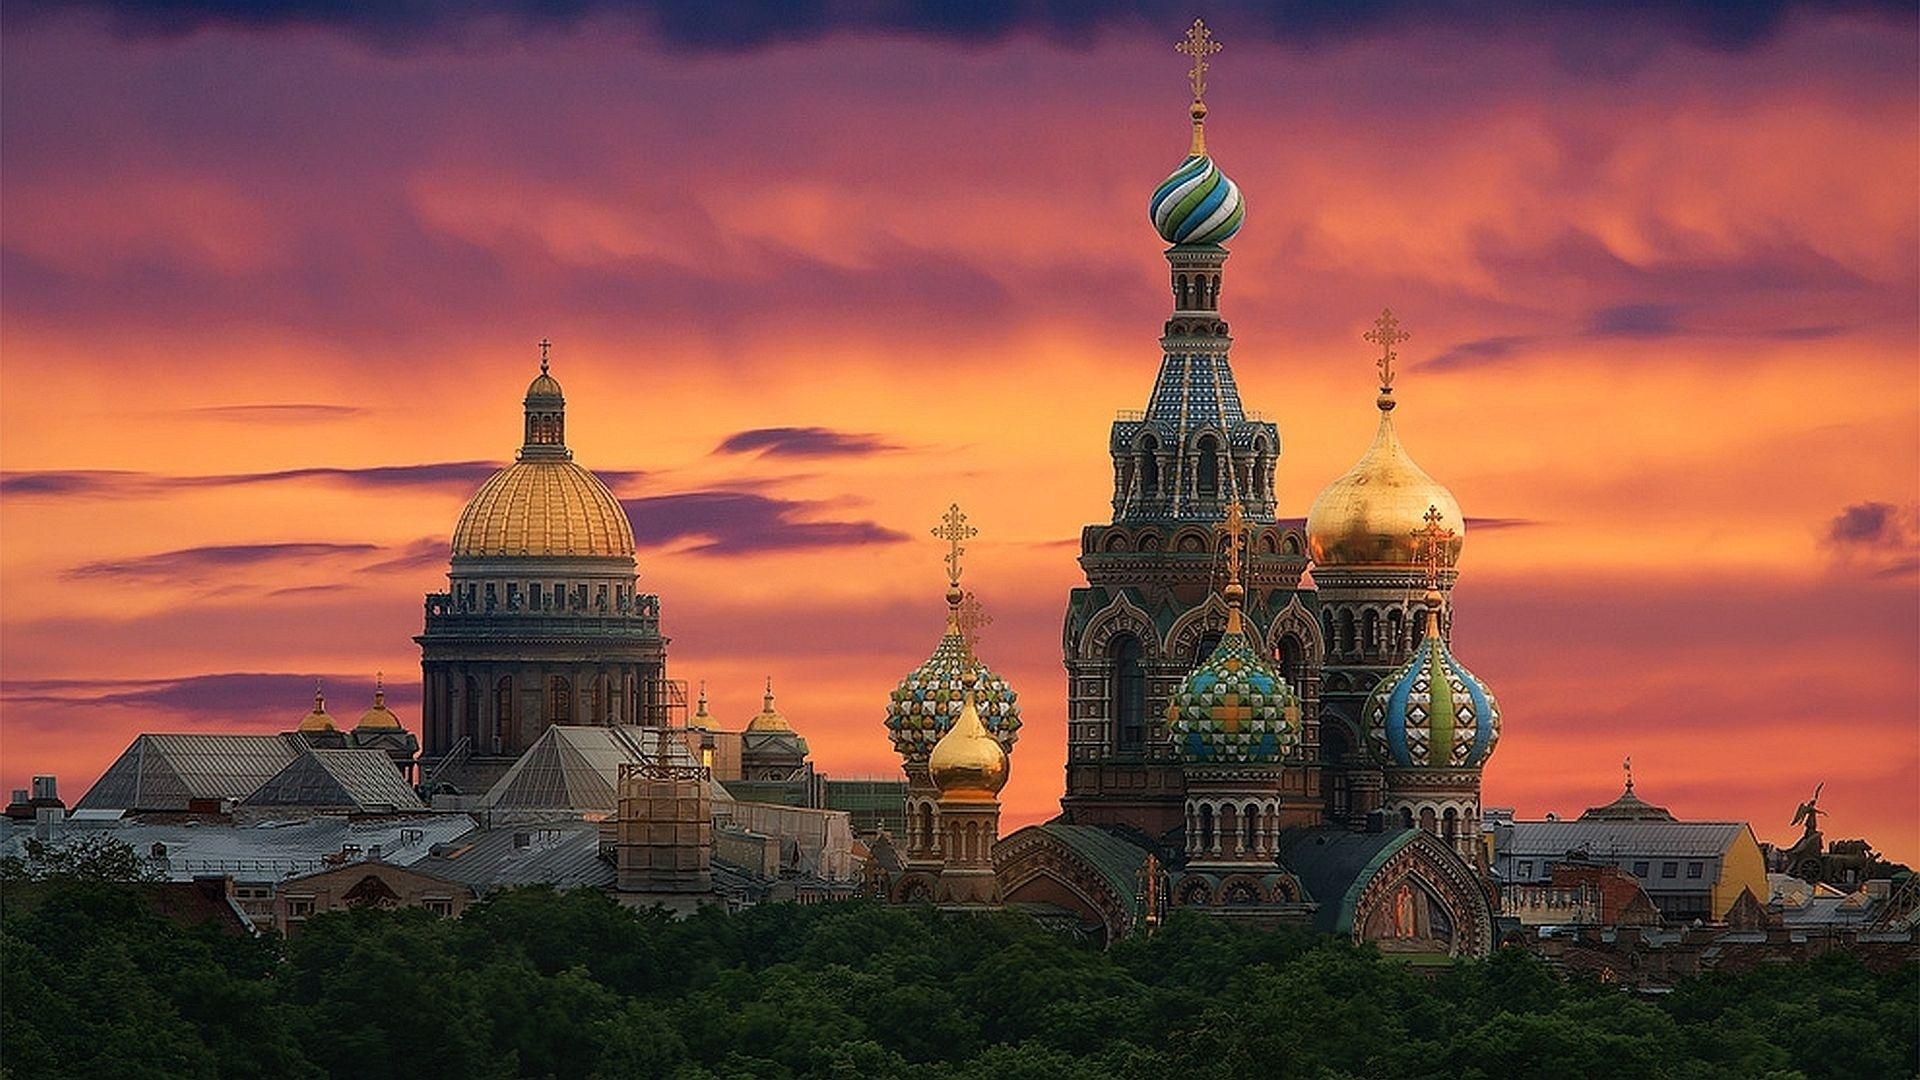 St. Petersburg HD Wallpaper for desktop download